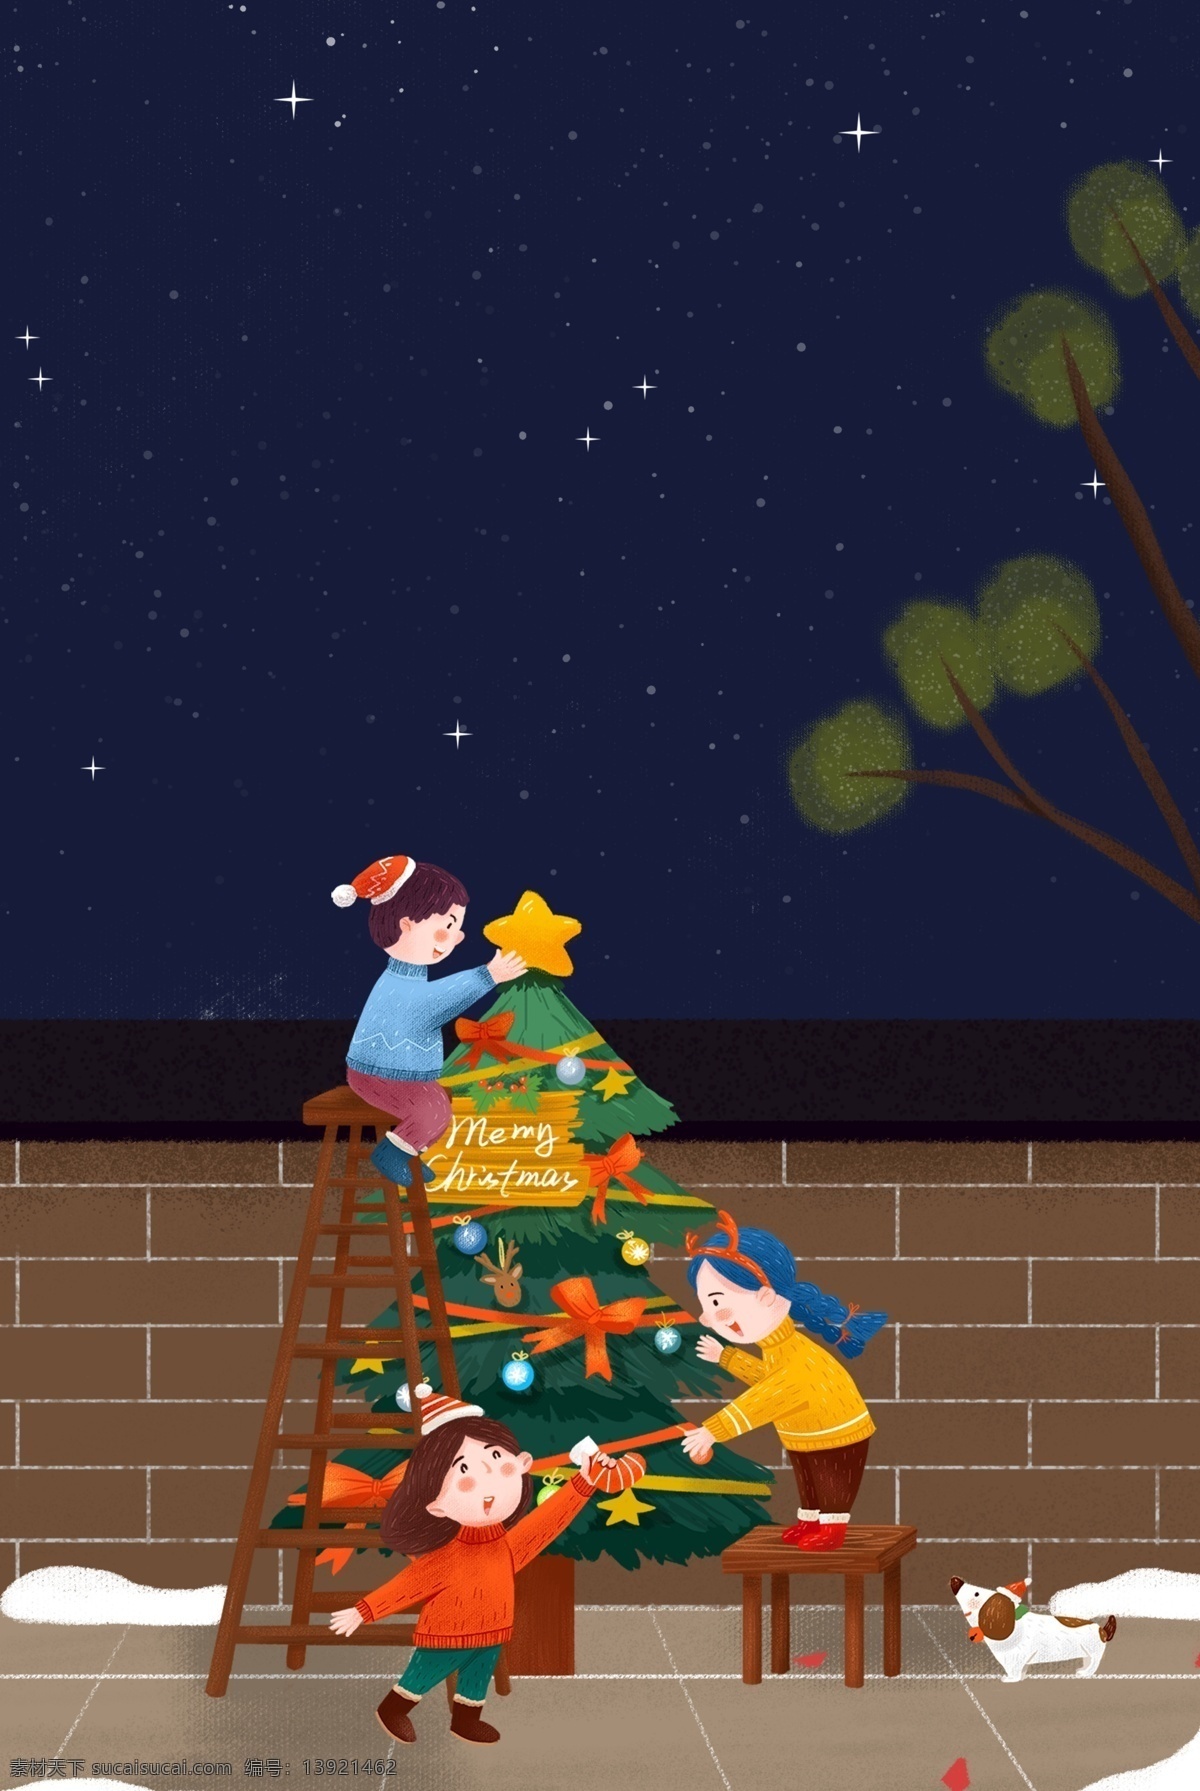 圣诞节 装饰 圣诞树 朋友 插画 海报 人物 儿童 礼物 动物 聚会 插画风 促销海报